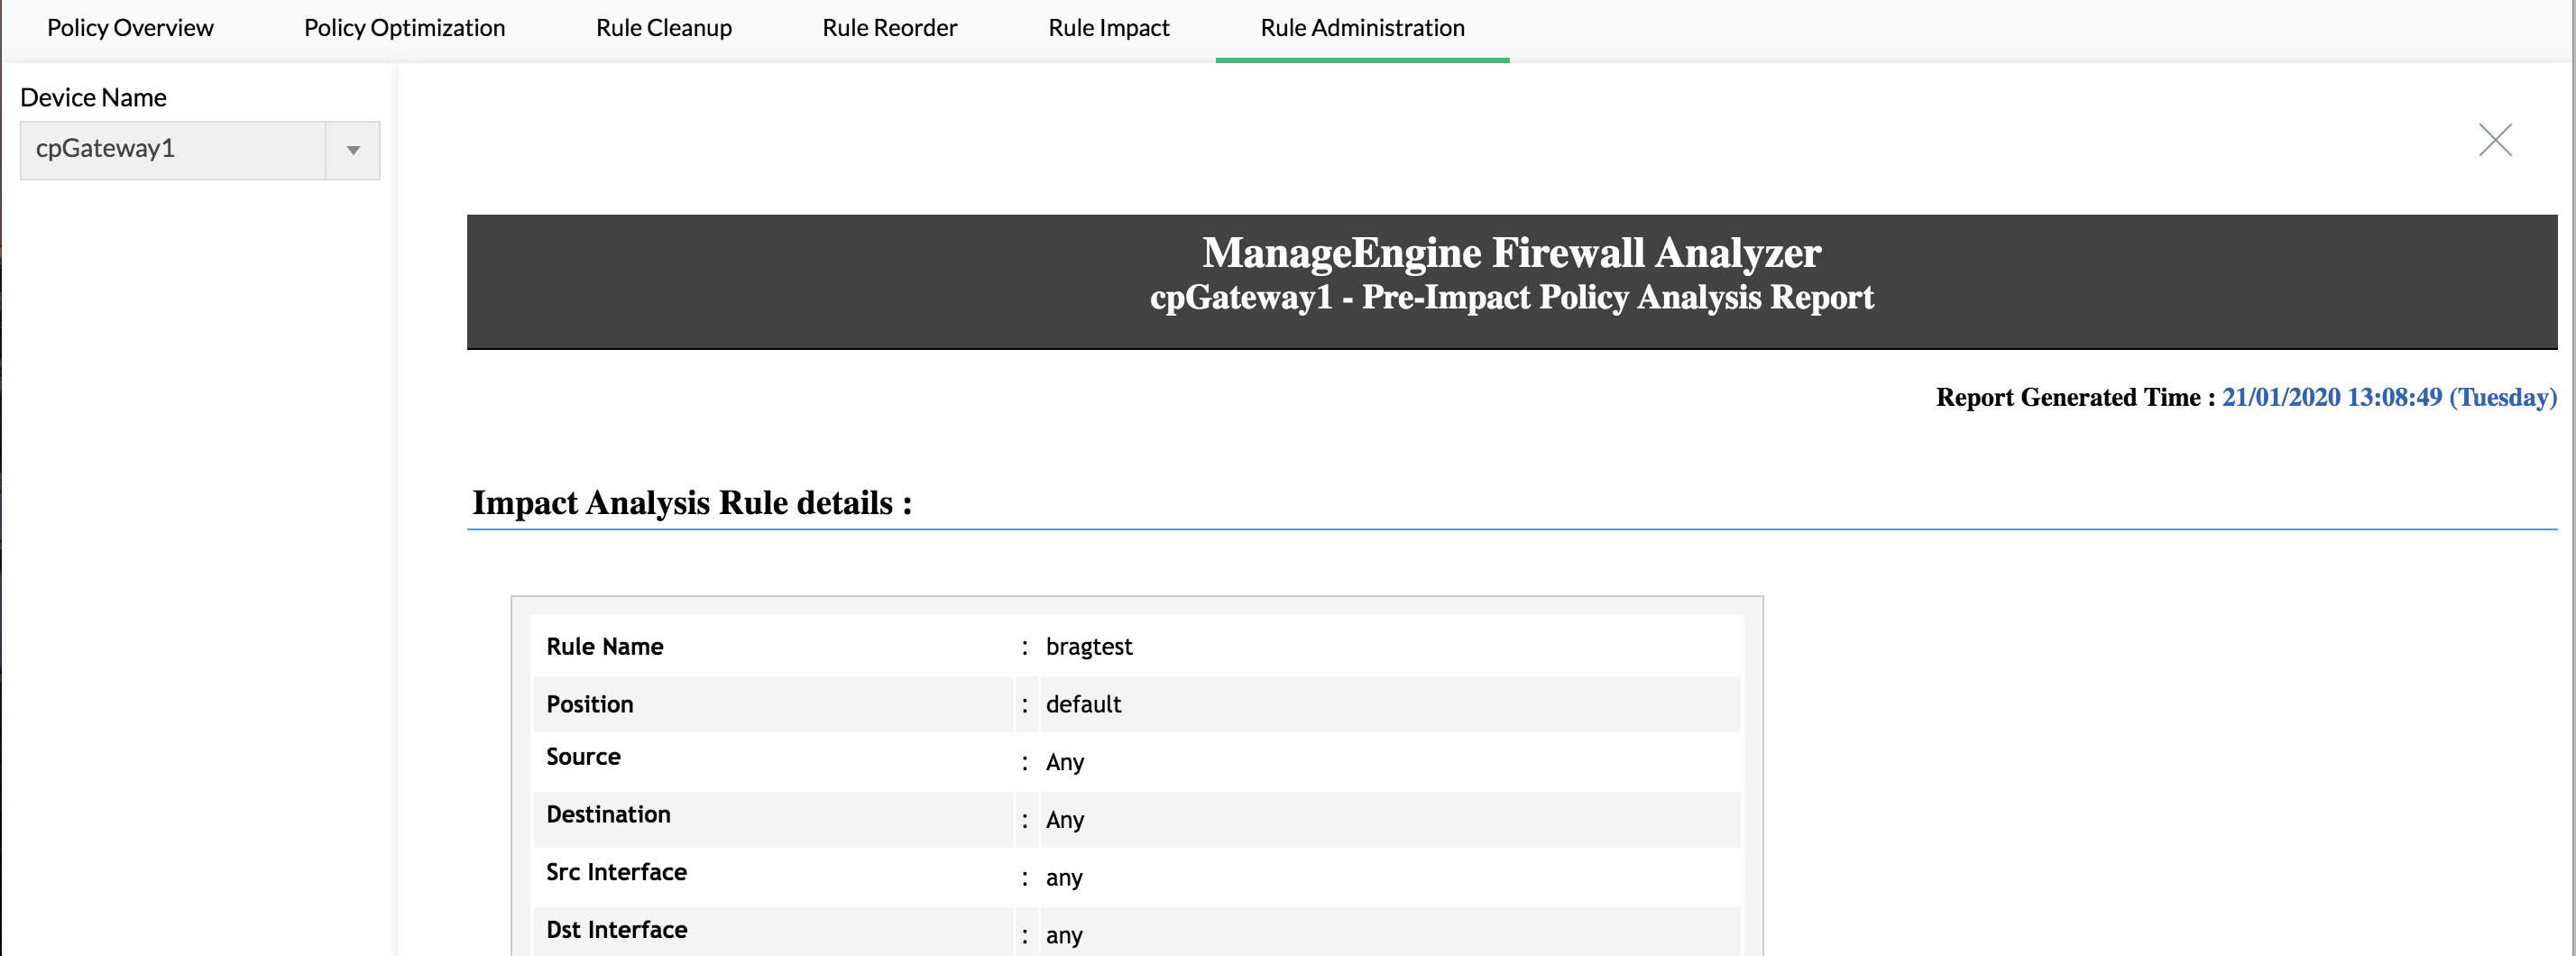 查看防火墙规则对现有规则集的影响 - 配置防火墙规则 - ManageEngine Firewall Analyzer